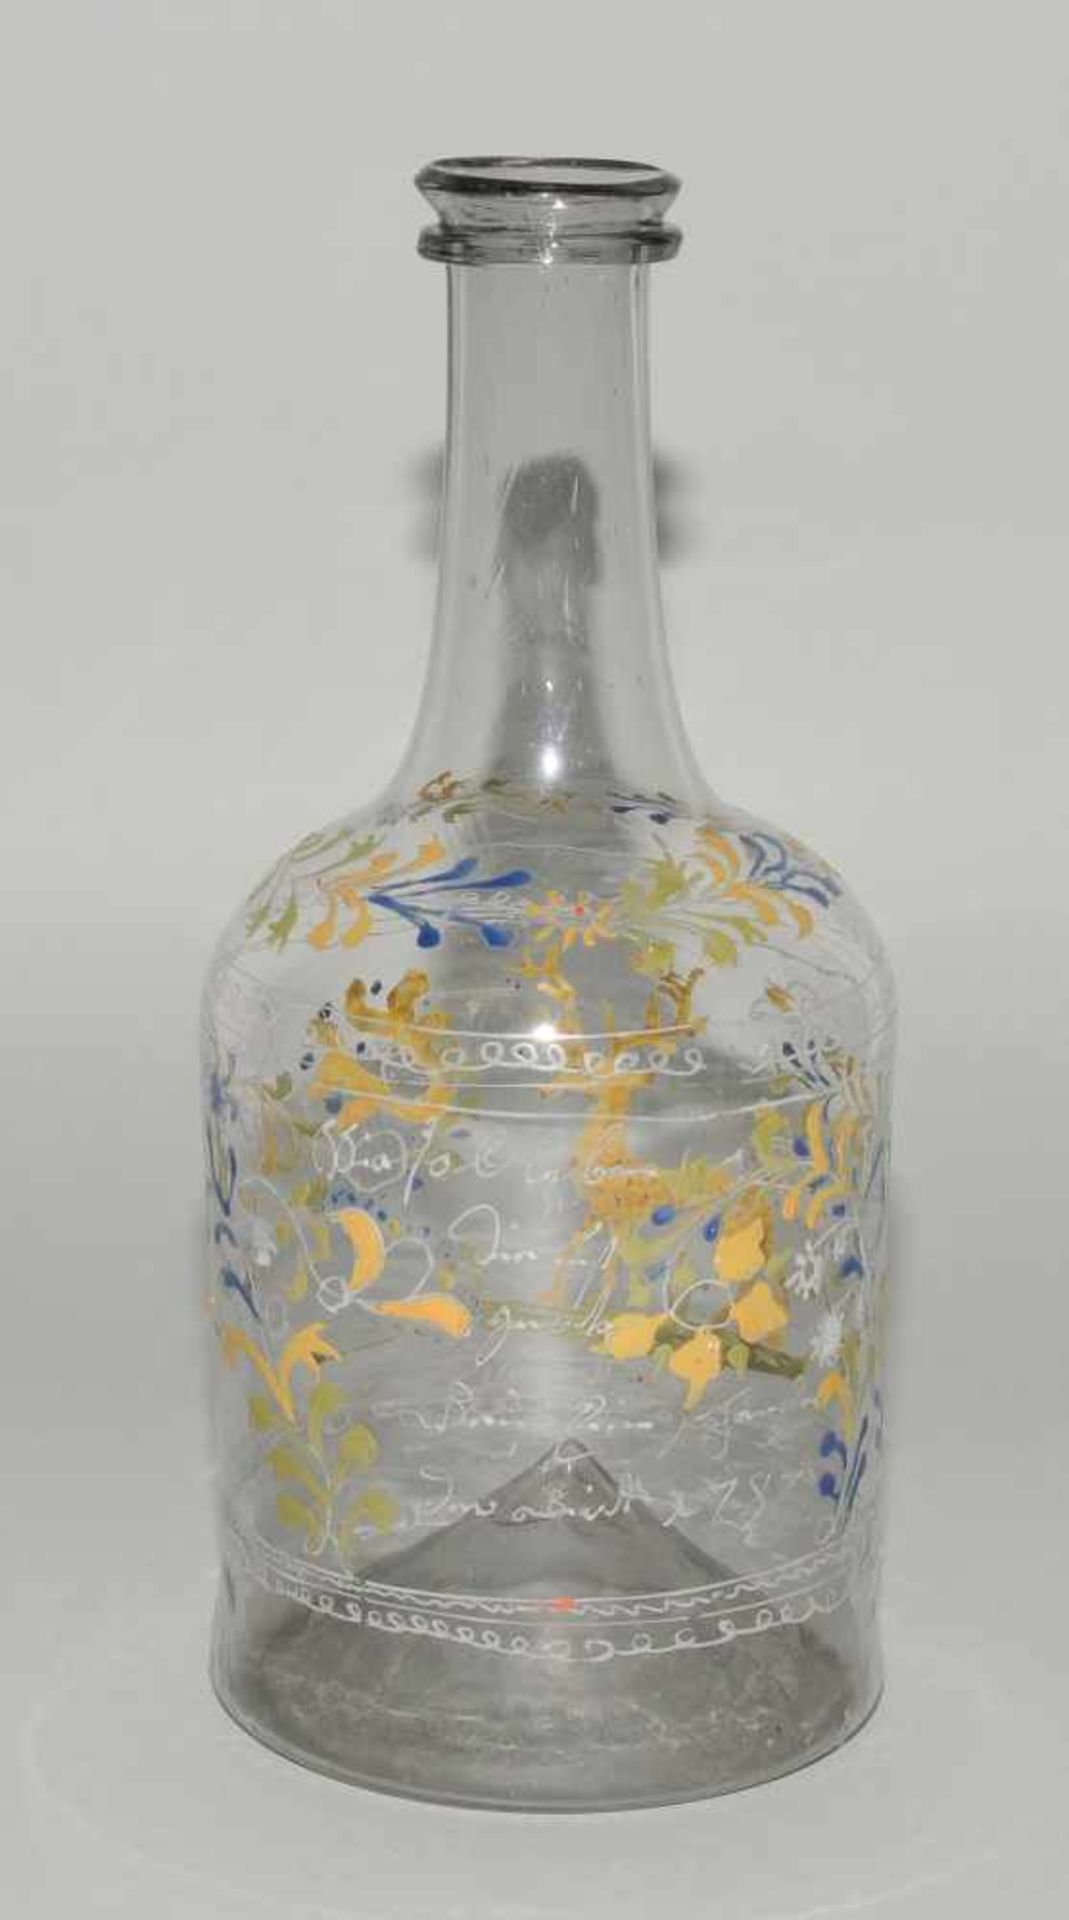 Flasche, alpenländisch Datiert 1736. Farbloses Glas, Emailmalerei: Hirsch, Blumenstauden, Spruch mit - Bild 2 aus 5